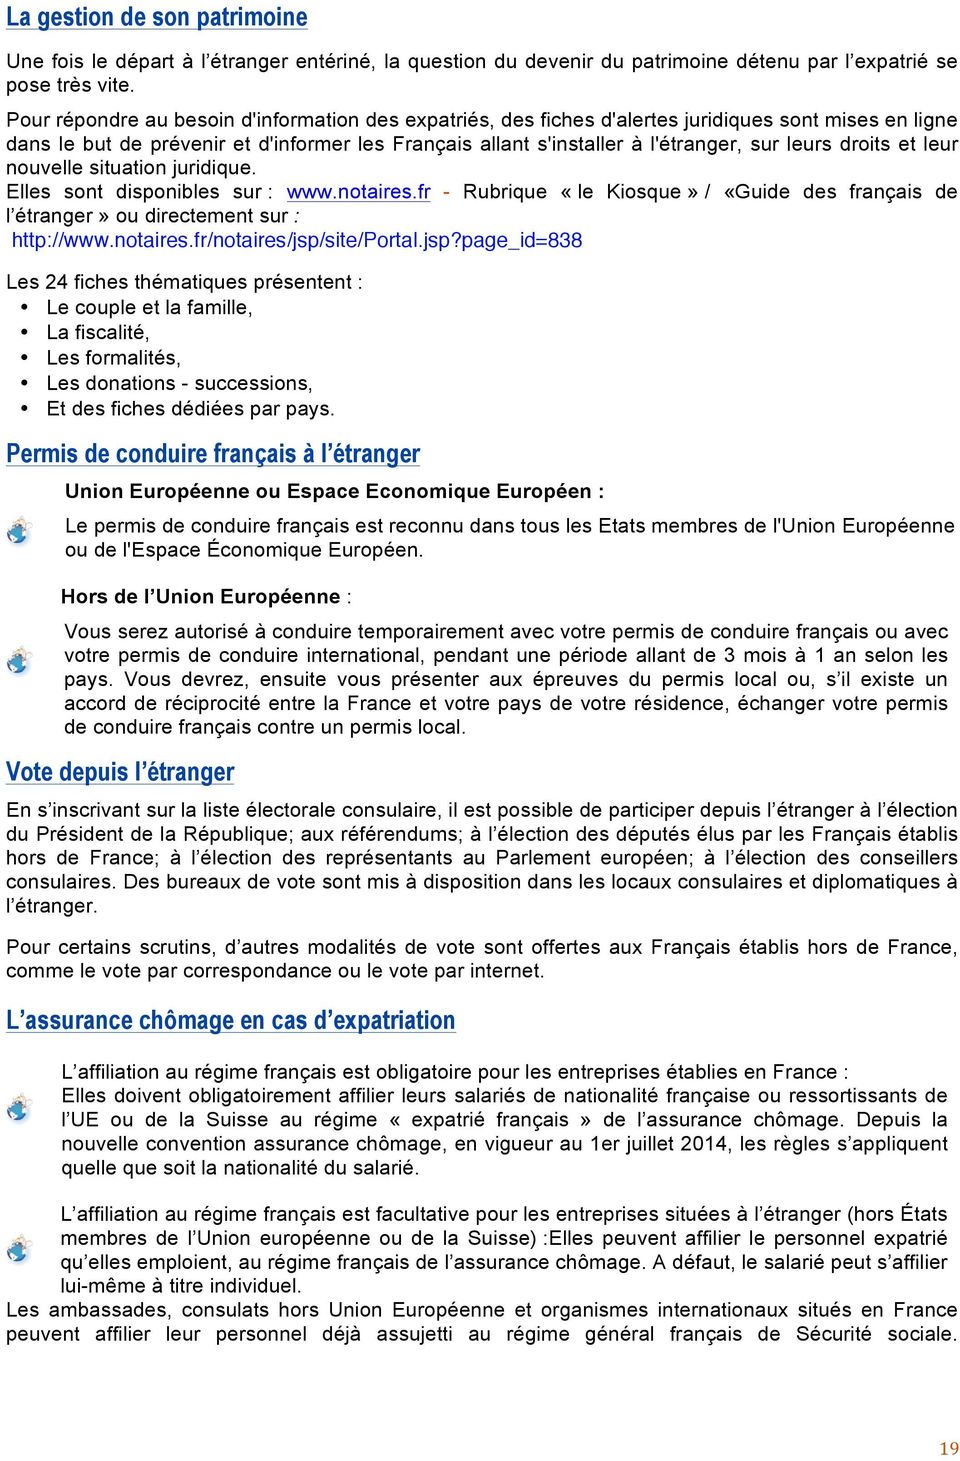 droits et leur nouvelle situation juridique. Elles sont disponibles sur : www.notaires.fr - Rubrique «le Kiosque» / «Guide des français de l étranger» ou directement sur : http://www.notaires.fr/notaires/jsp/site/portal.